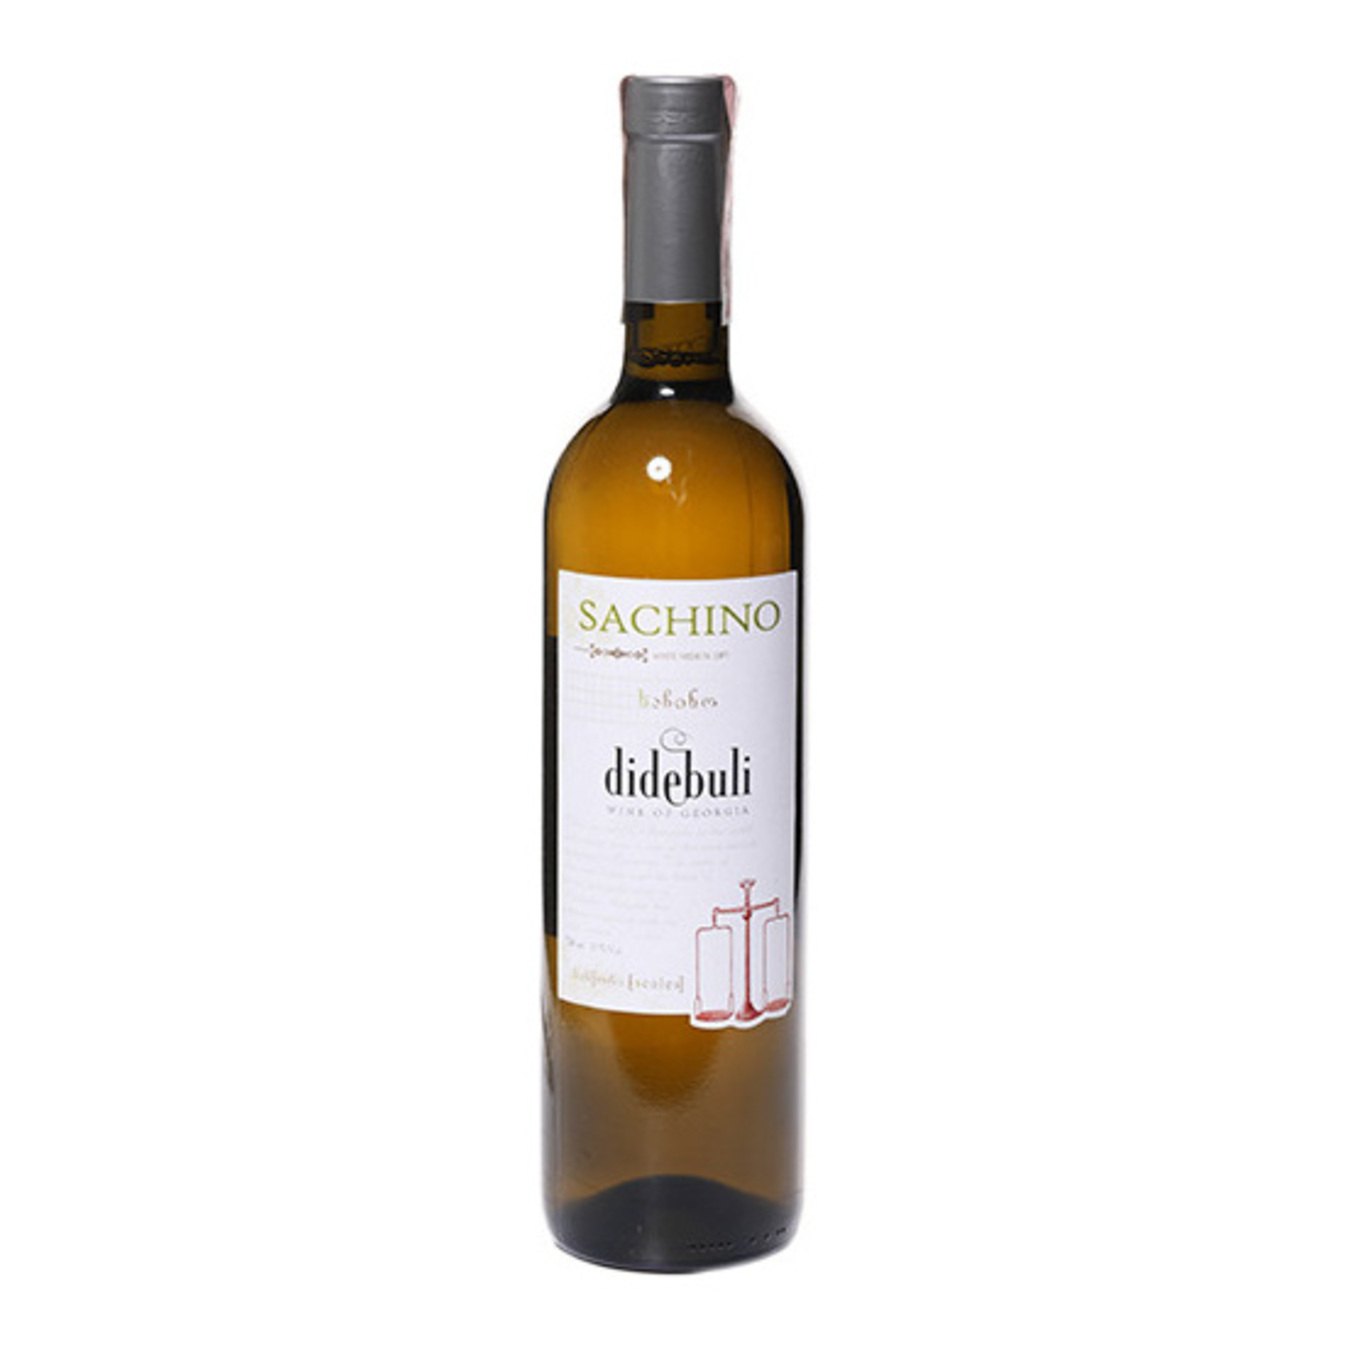 Didebuli Sachino white semi-dry wine 11% 0,75l